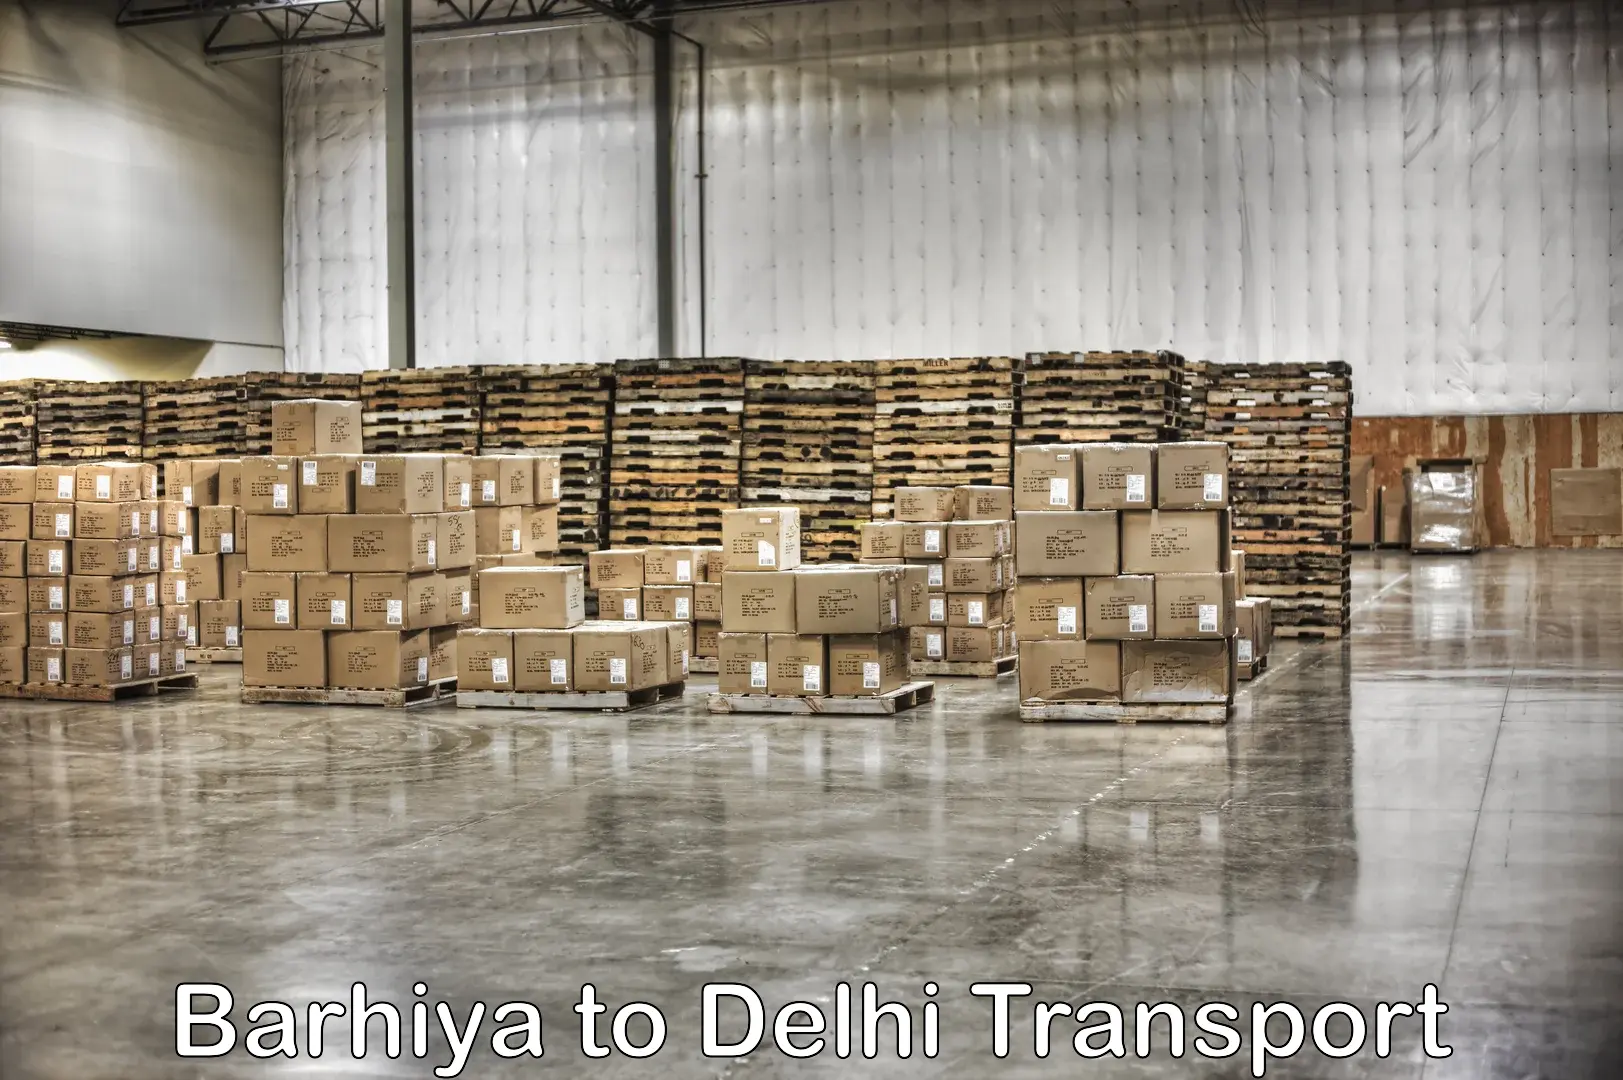 Daily transport service Barhiya to NIT Delhi